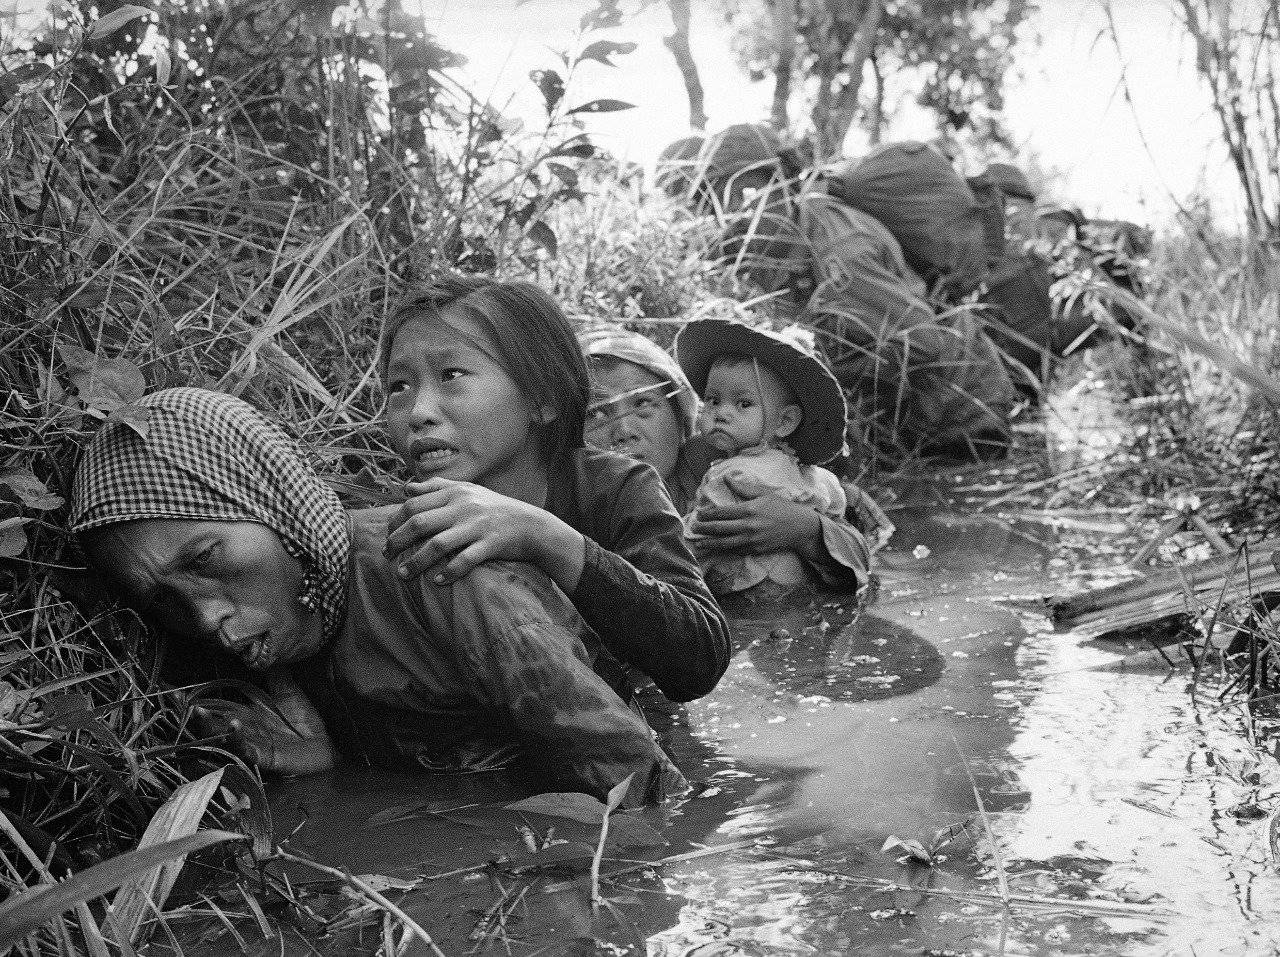 Vojna vo Vietname mala zdrvujúci dopad na obyvateľov